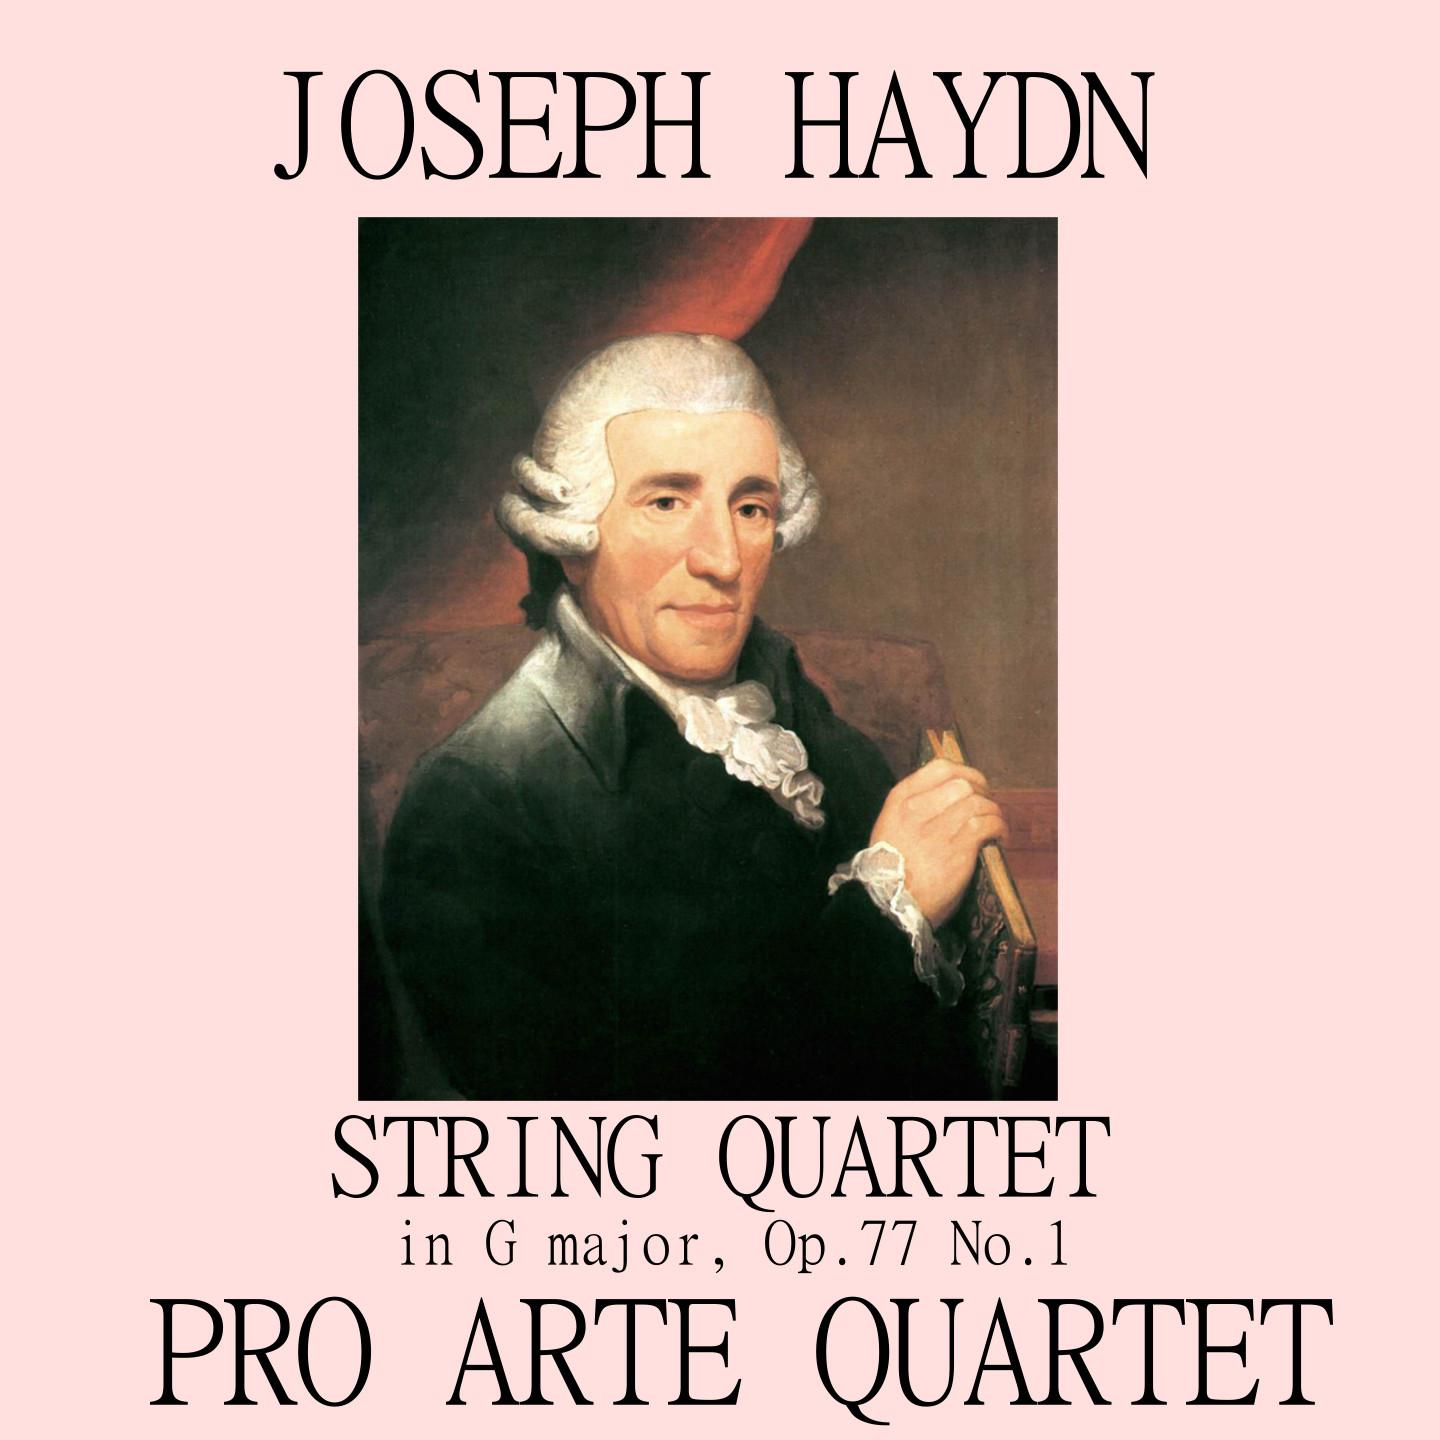 String Quartet in G major, Op.77 No.1